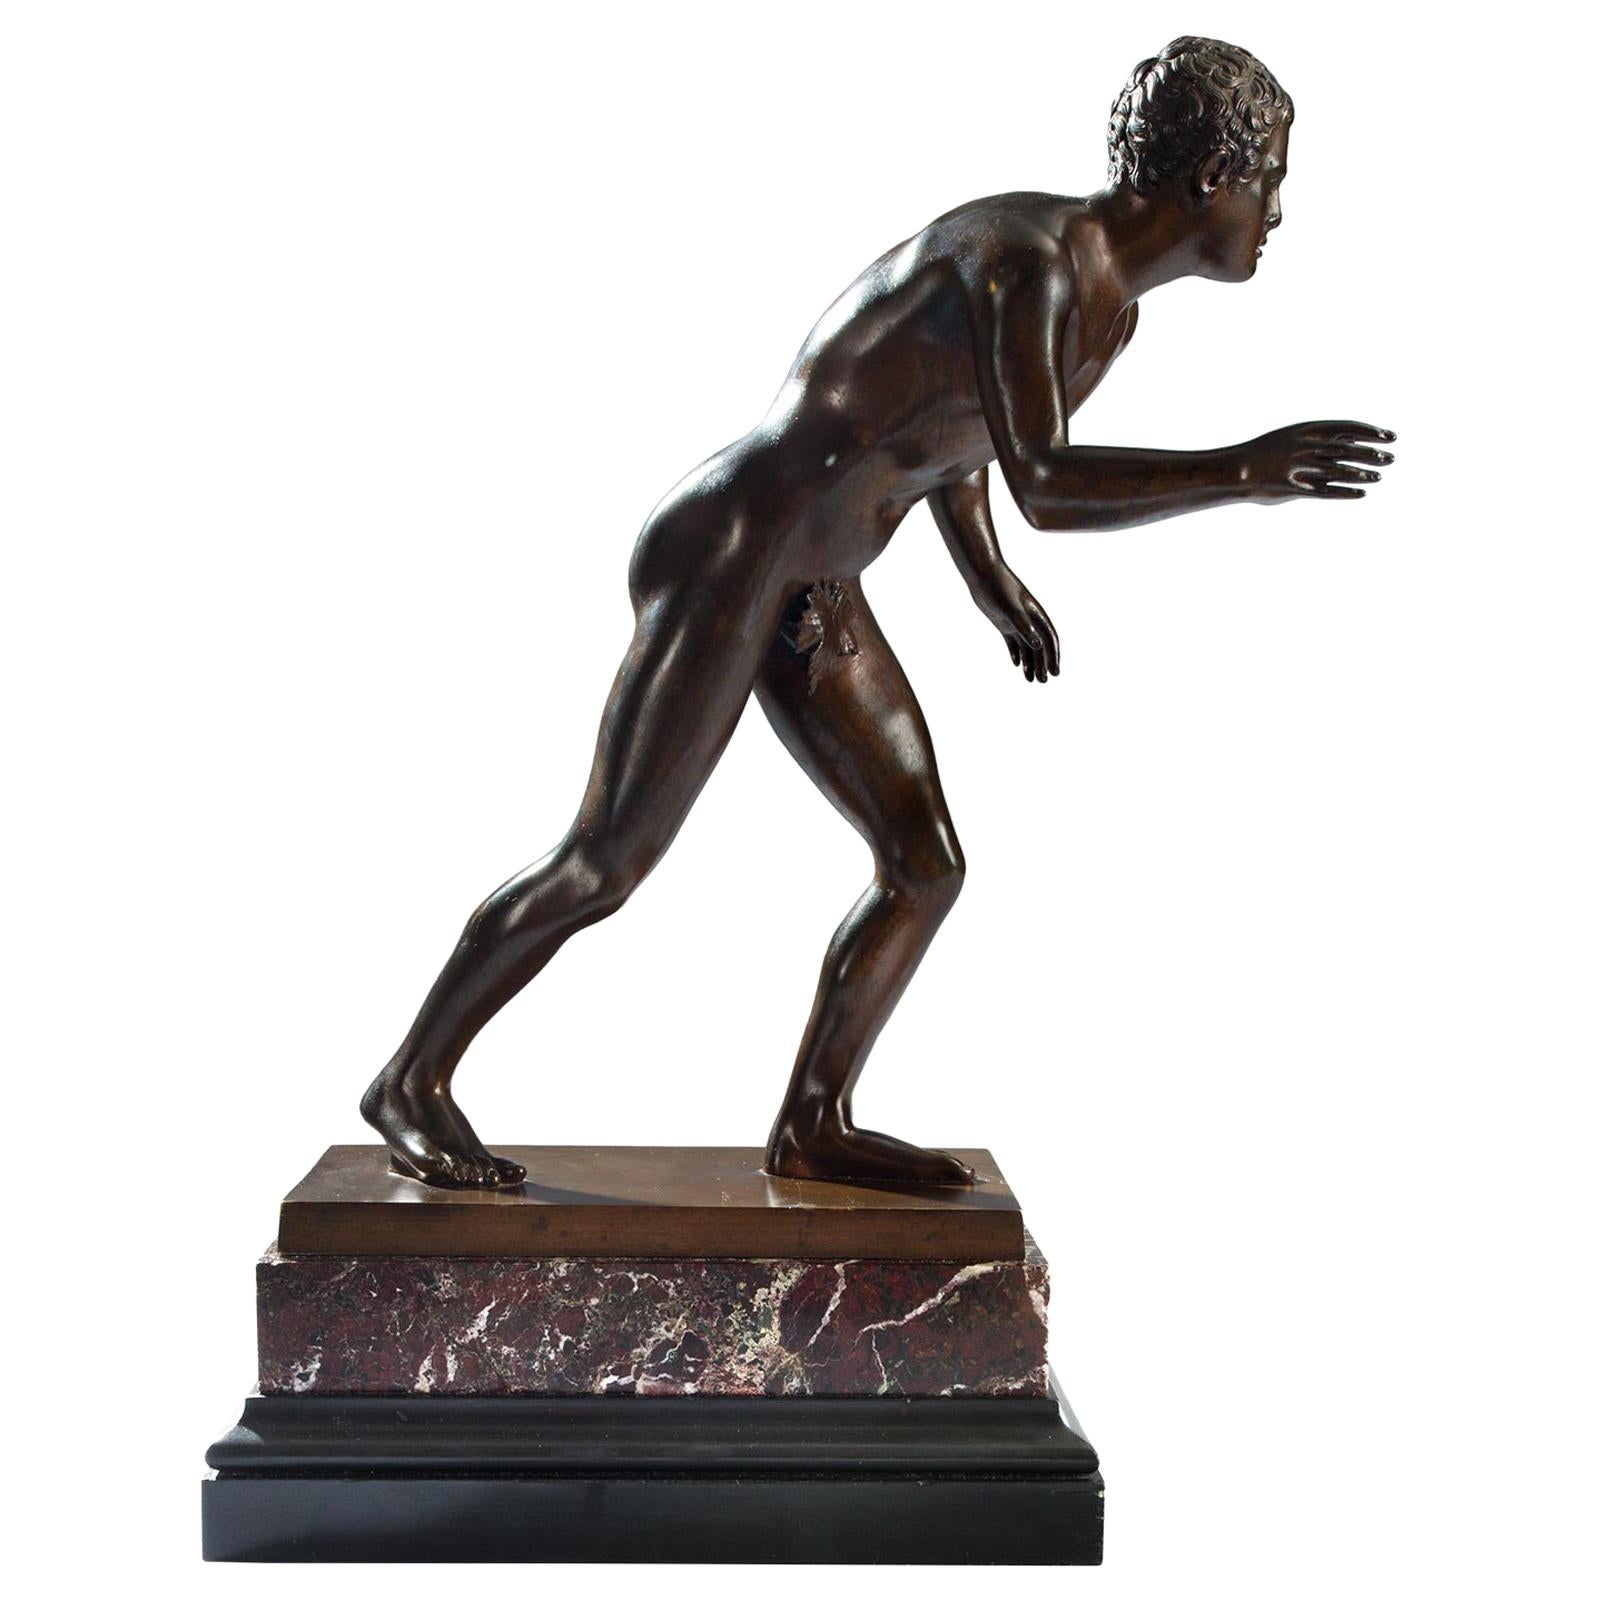 Bronze patiné italien d'époque Grand Tour du XIXe siècle représentant un athlète romain